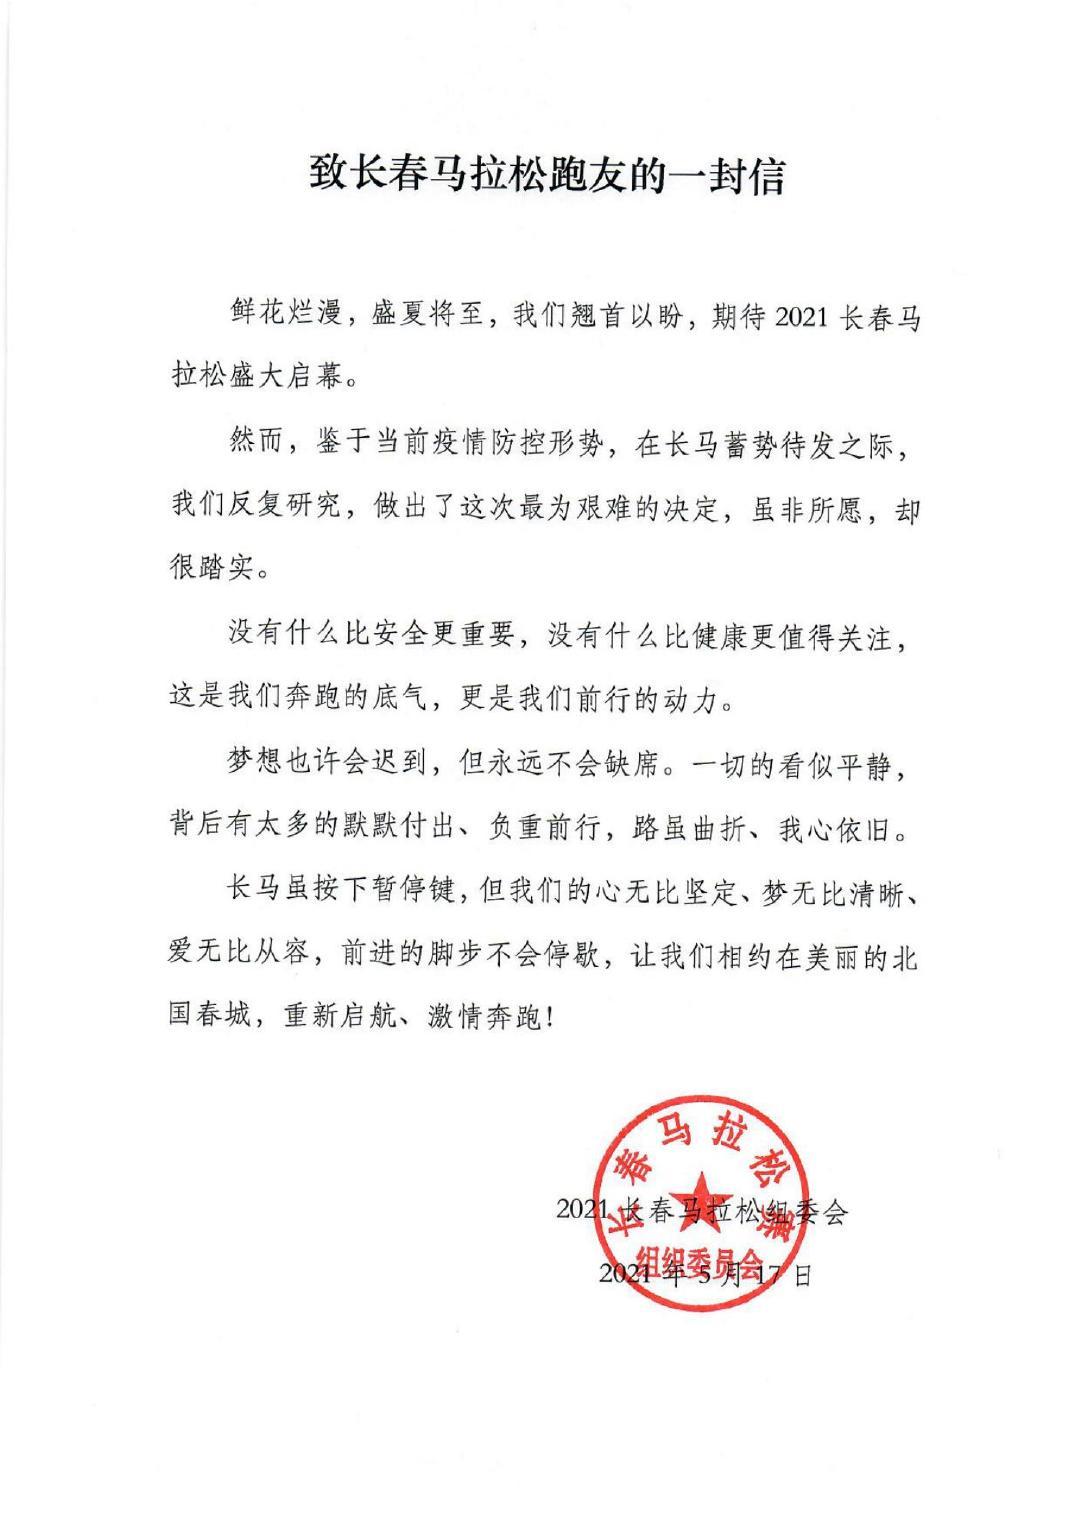 长马延期，组委会发布《致长春马拉松跑友的一封信》